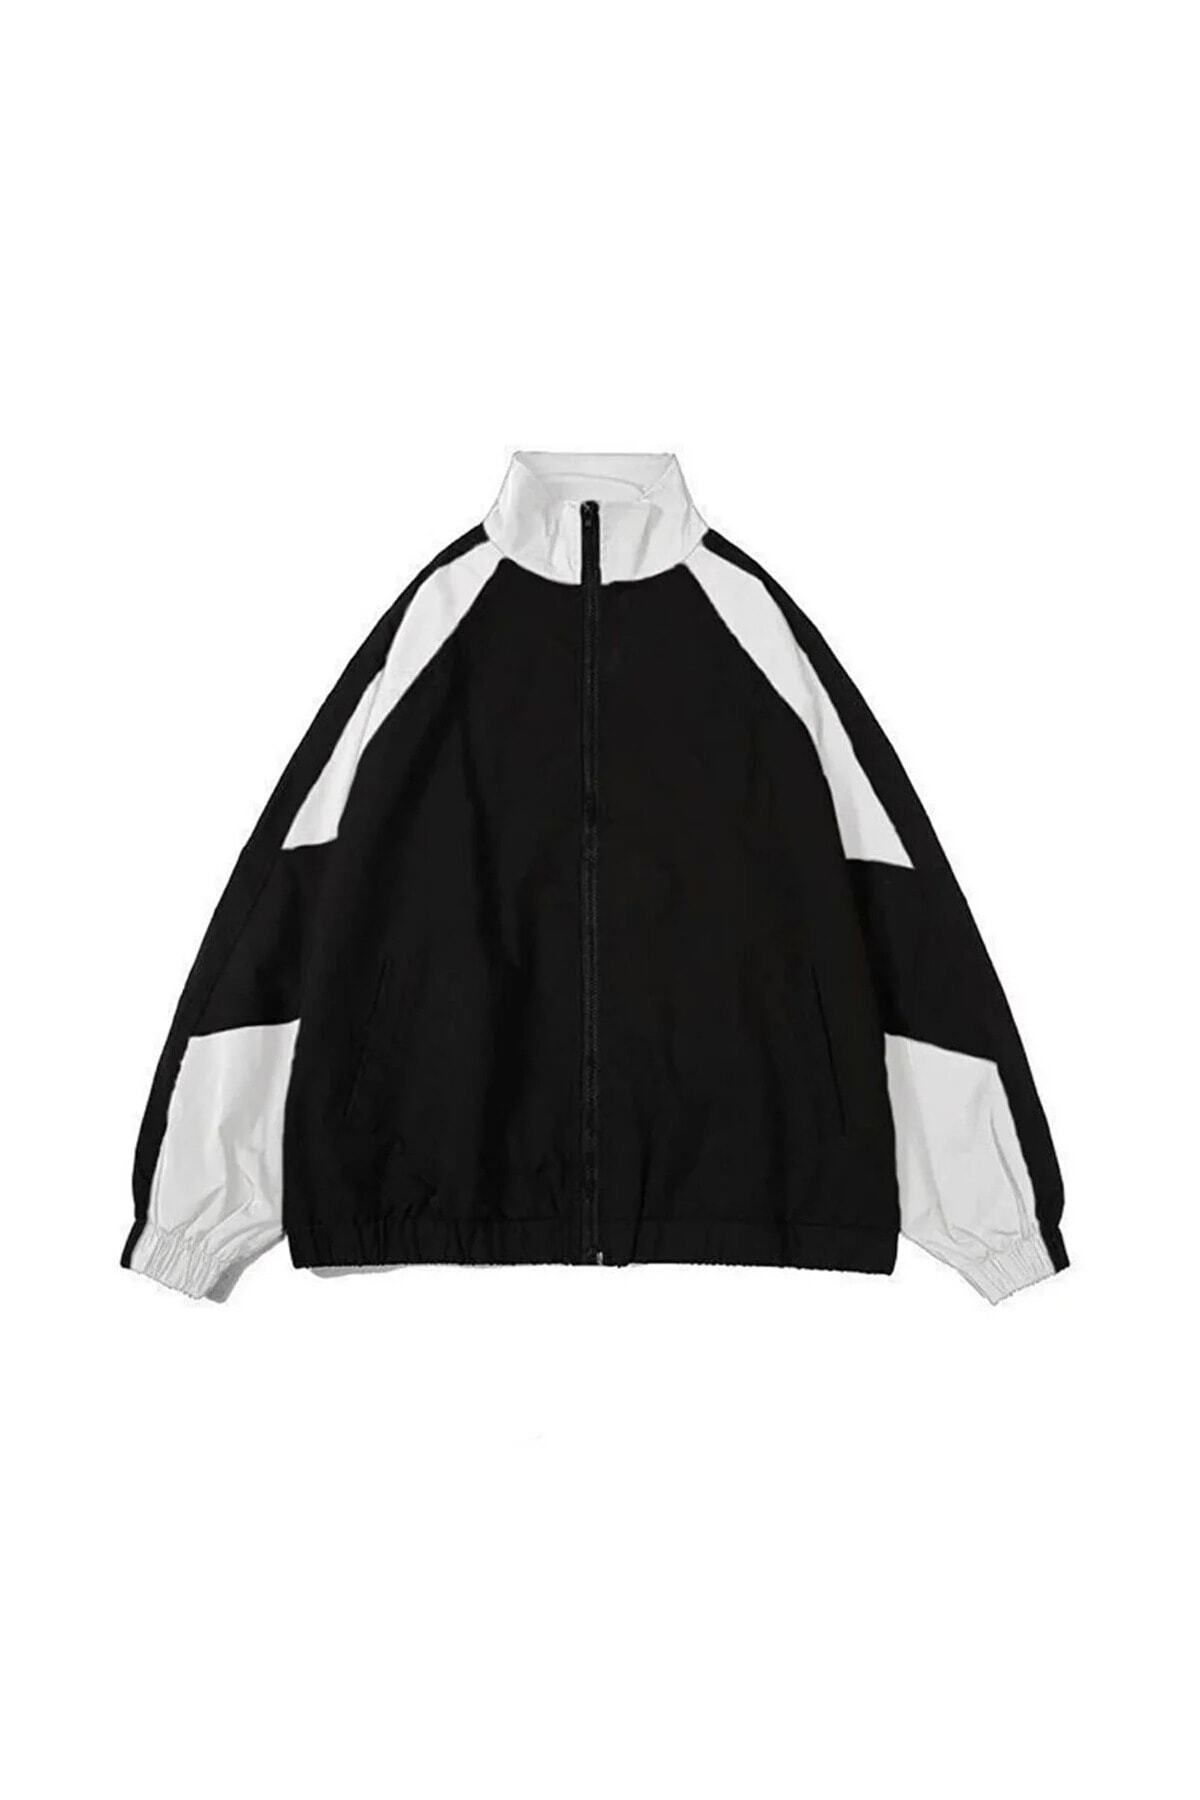 Gofeel Yağmurluk Ceket Paraşüt Kumaş Unisex Oversize Bol Kalıp Siyah-beyaz Renkli